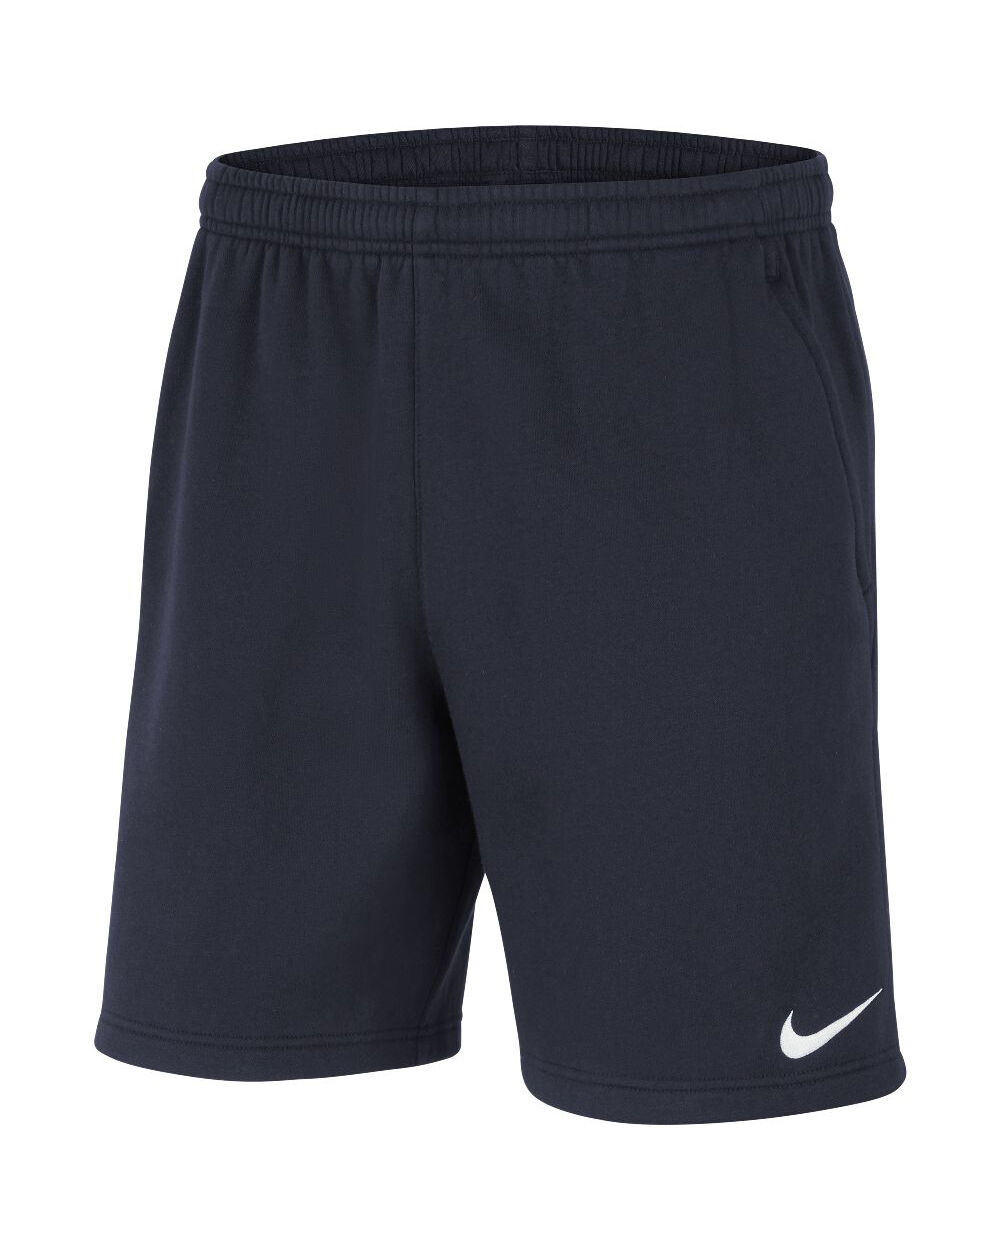 Pantalón corto para salida Nike Team Club 20 Azul Marino para Hombre - CW6910-451